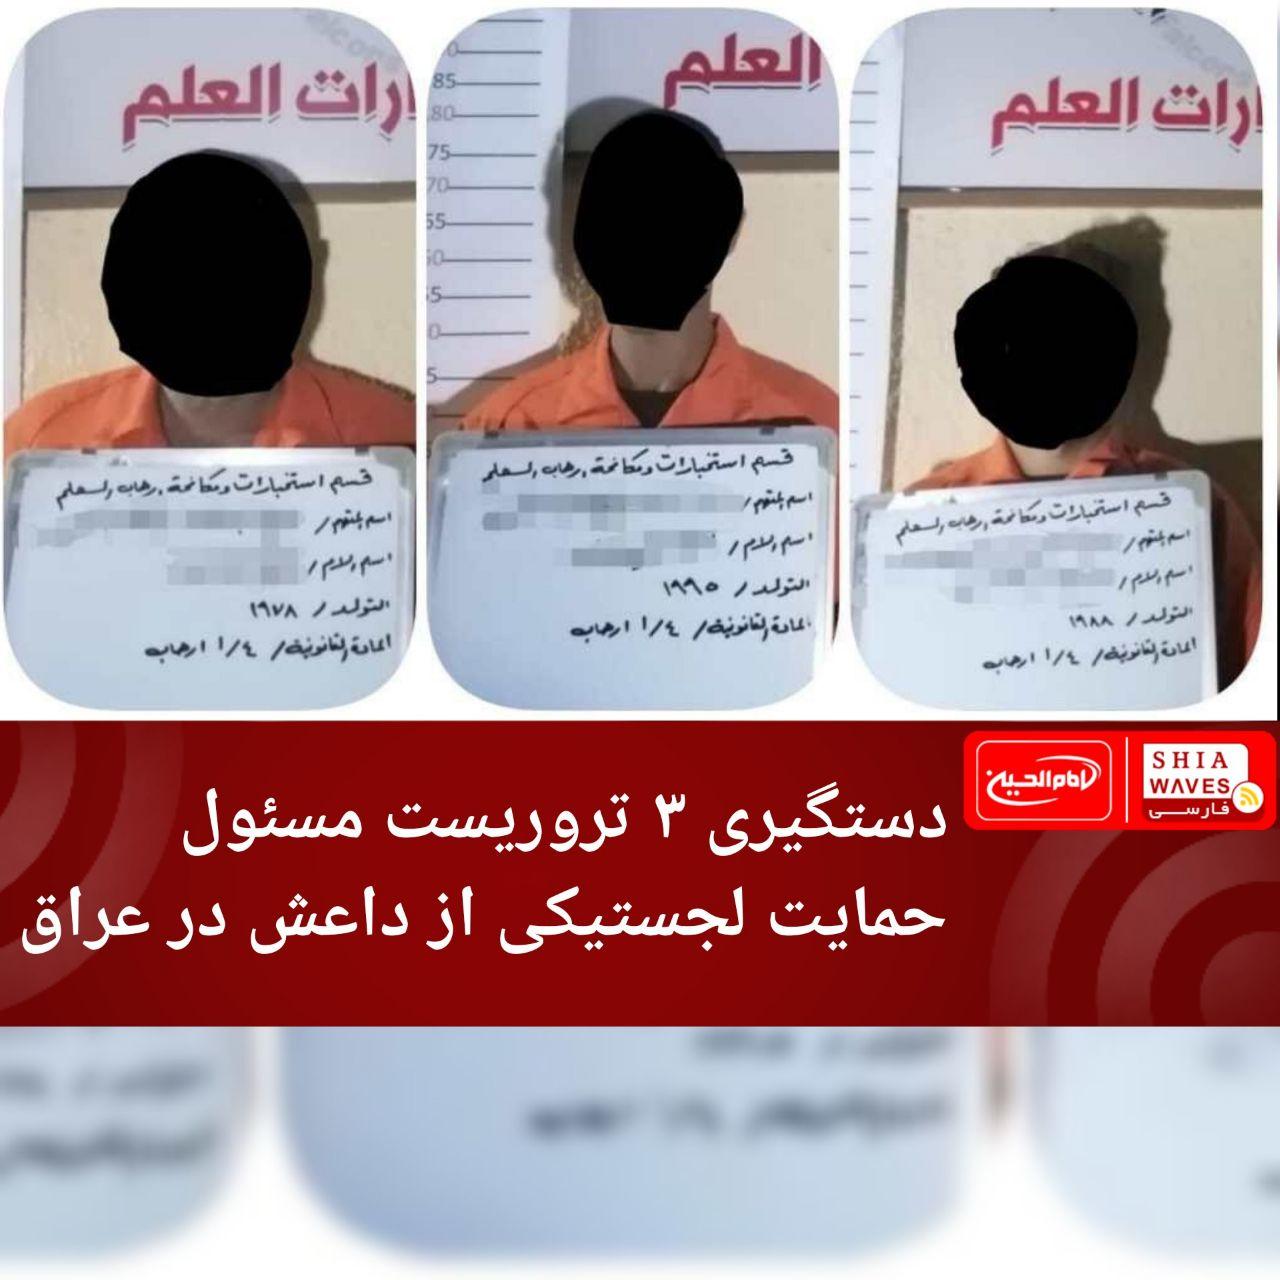 تصویر دستگیری ۳ تروریست مسئول حمایت لجستیکی از داعش در عراق